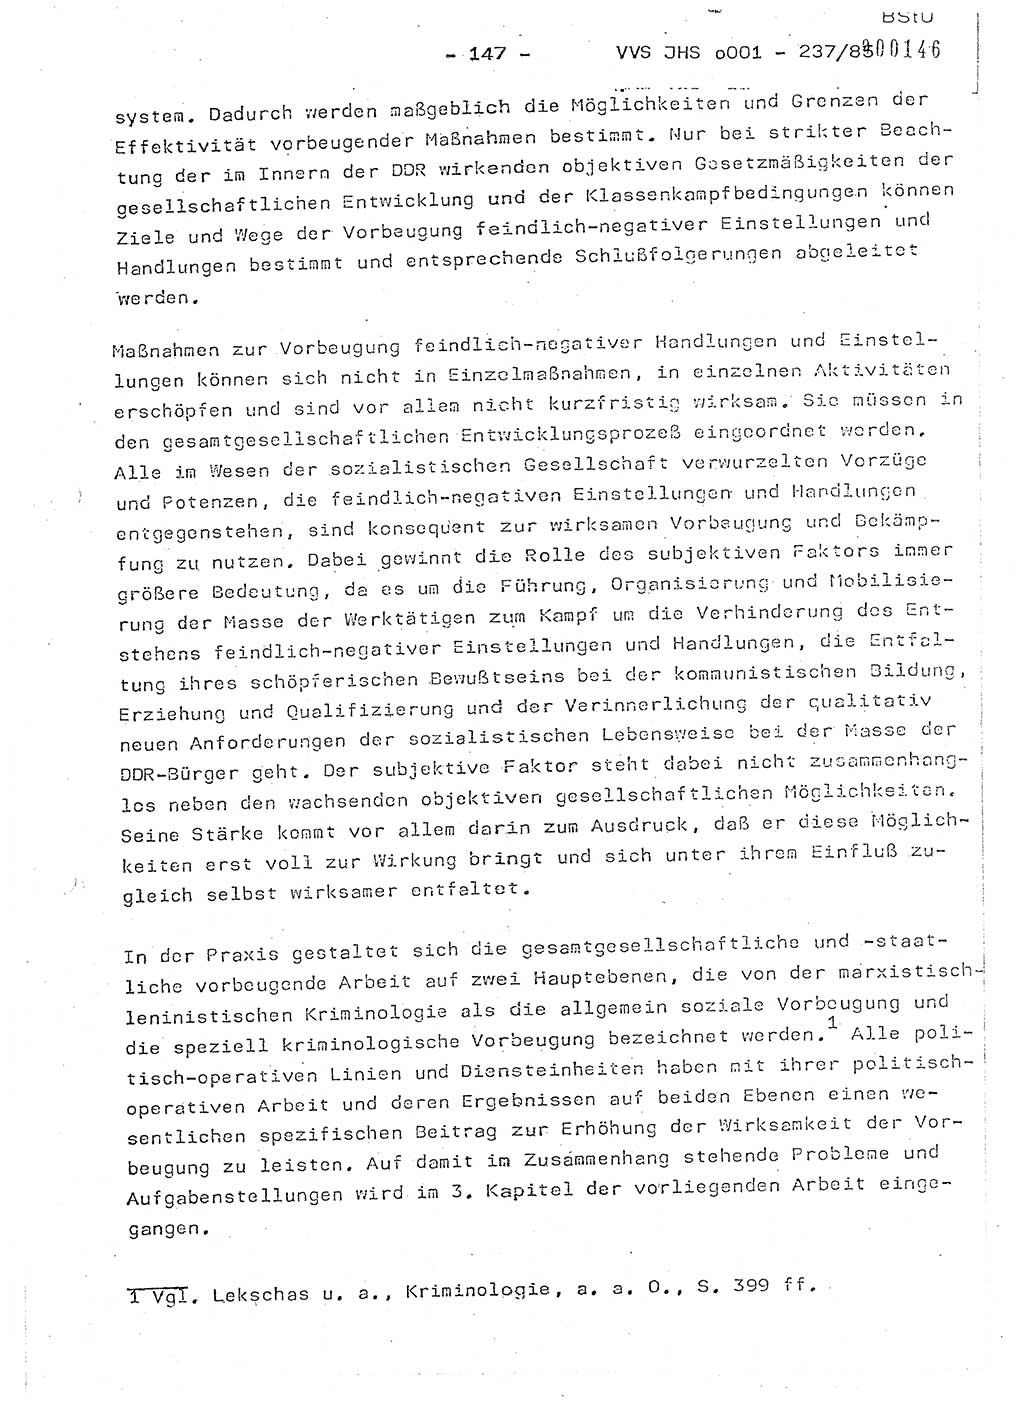 Dissertation Oberstleutnant Peter Jakulski (JHS), Oberstleutnat Christian Rudolph (HA Ⅸ), Major Horst Böttger (ZMD), Major Wolfgang Grüneberg (JHS), Major Albert Meutsch (JHS), Ministerium für Staatssicherheit (MfS) [Deutsche Demokratische Republik (DDR)], Juristische Hochschule (JHS), Vertrauliche Verschlußsache (VVS) o001-237/85, Potsdam 1985, Seite 147 (Diss. MfS DDR JHS VVS o001-237/85 1985, S. 147)